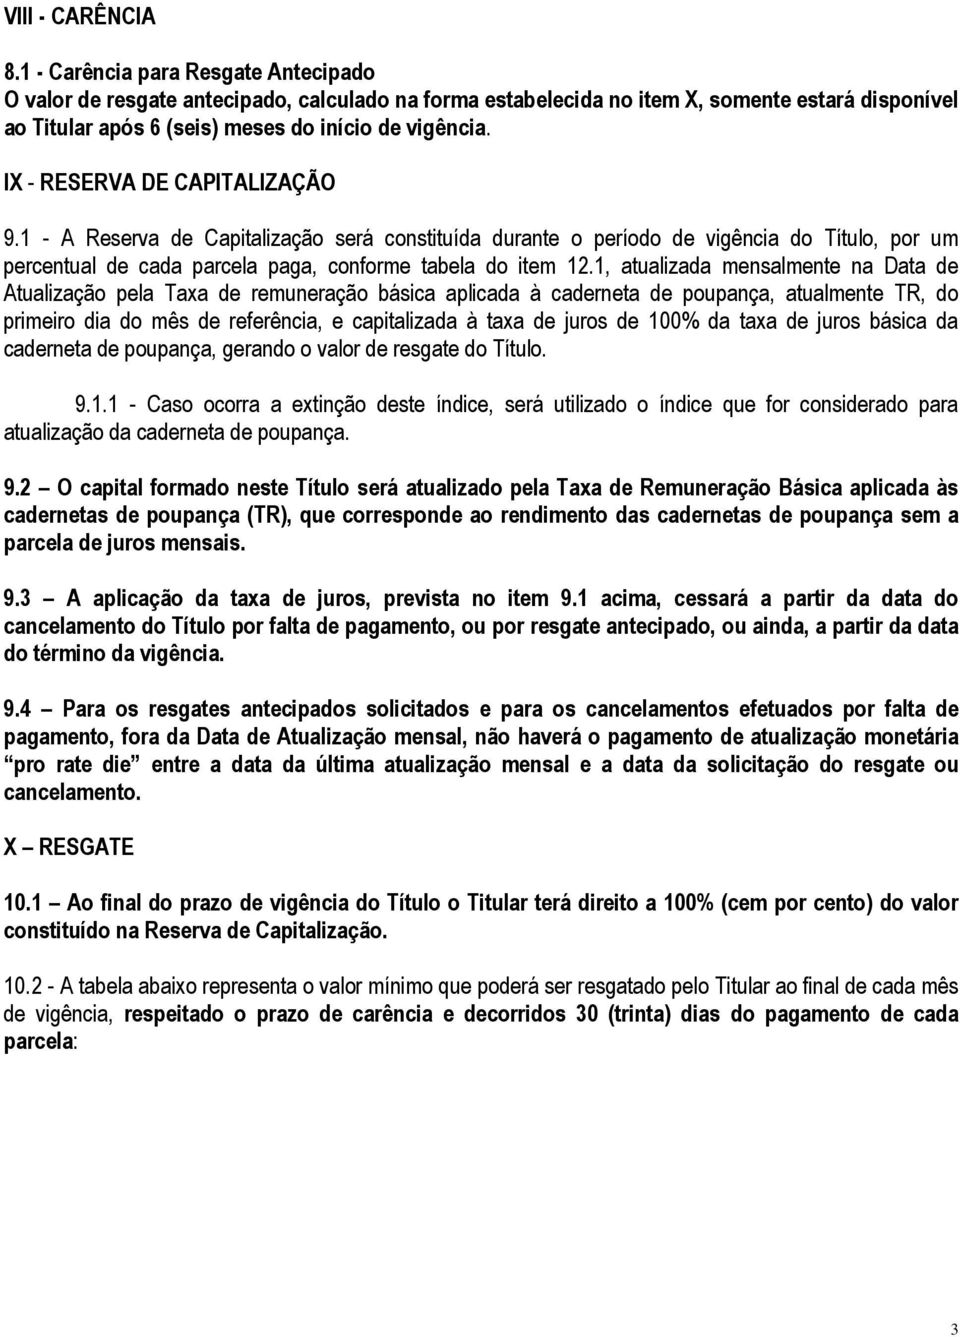 IX - RESERVA DE CAPITALIZAÇÃO 9.1 - A Reserva de Capitalização será constituída durante o período de vigência do Título, por um percentual de cada parcela paga, conforme tabela do item 12.